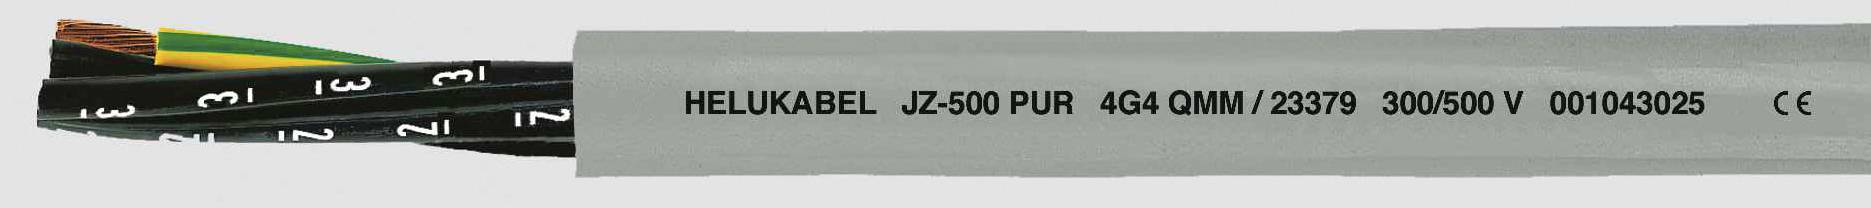 HELUKABEL JZ-500 PUR Steuerleitung 5 G 2.50 mm² Grau 23376 100 m